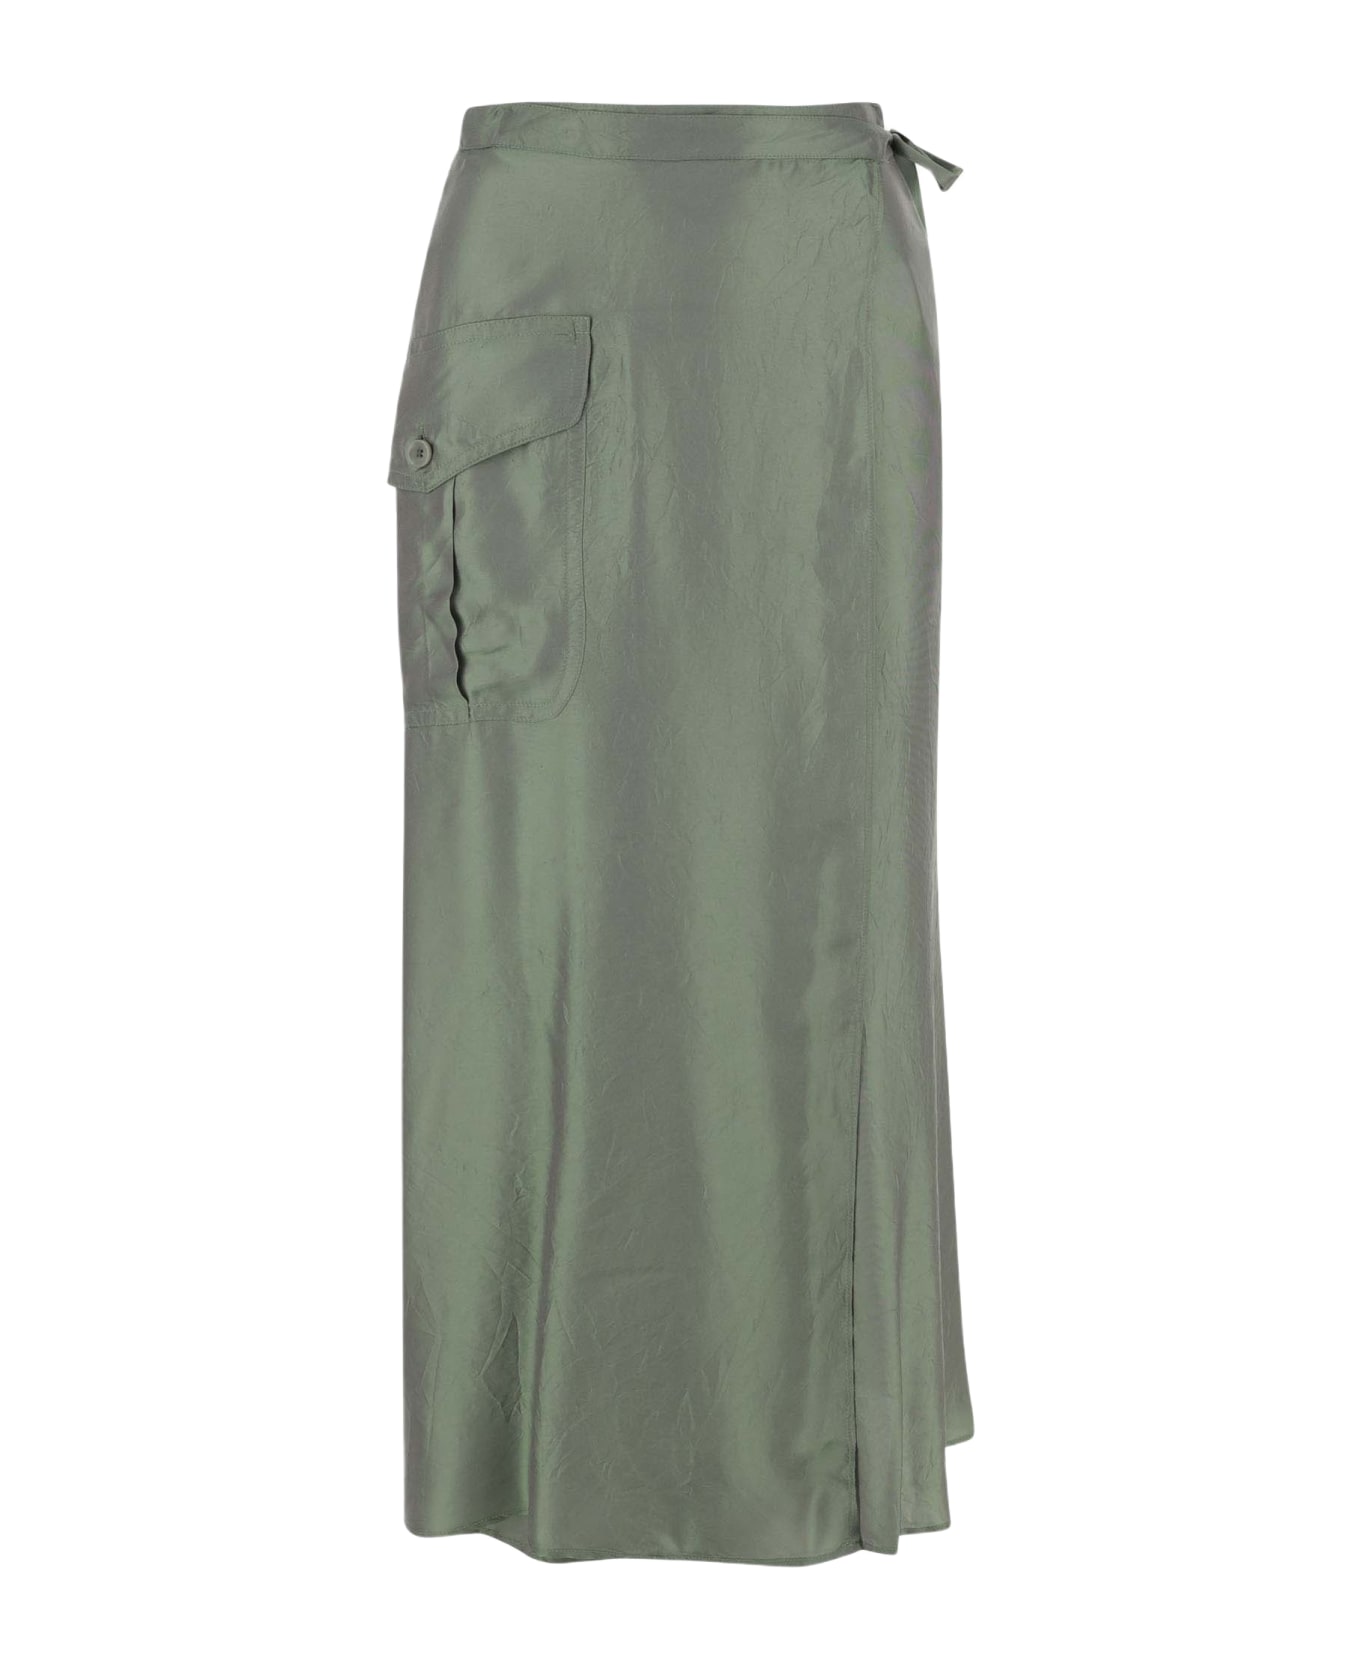 Aspesi Viscose Blend Long Skirt - Green